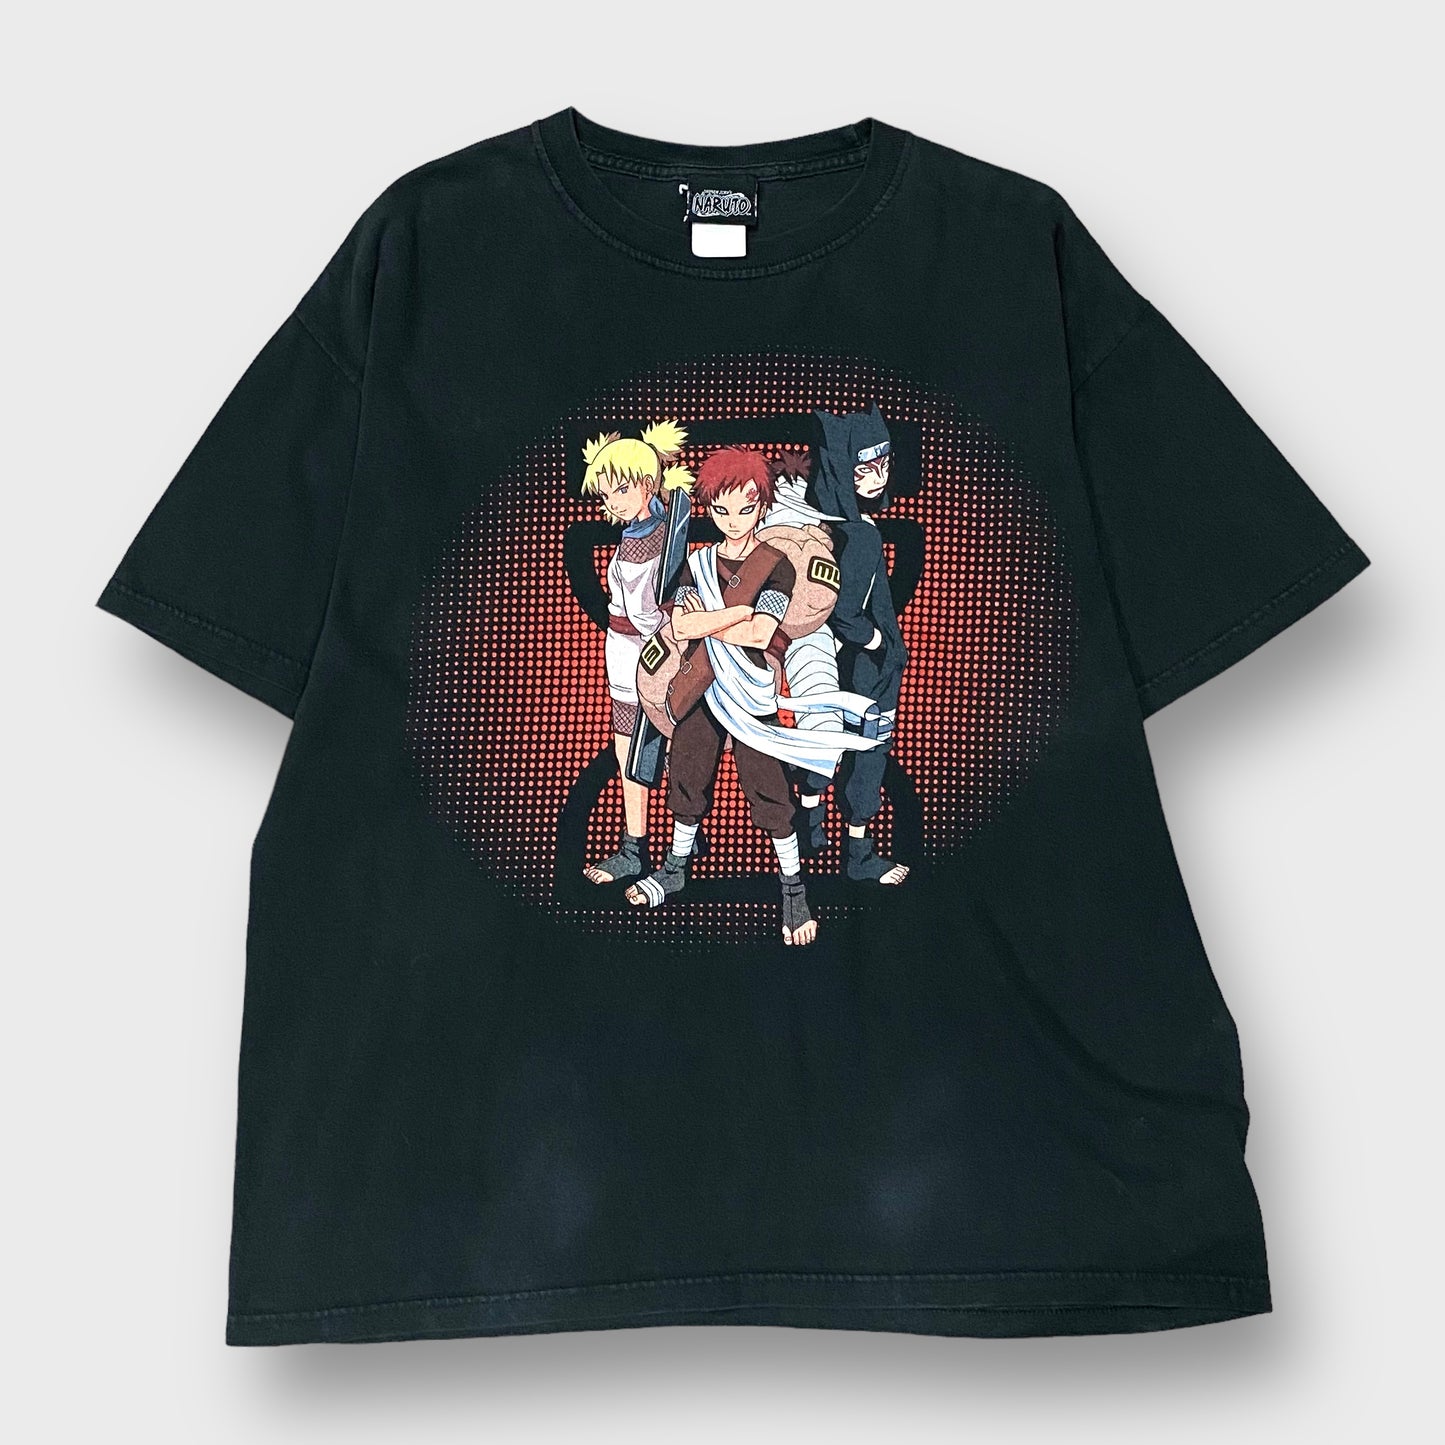 00's "Naruto" Anime T-shirt